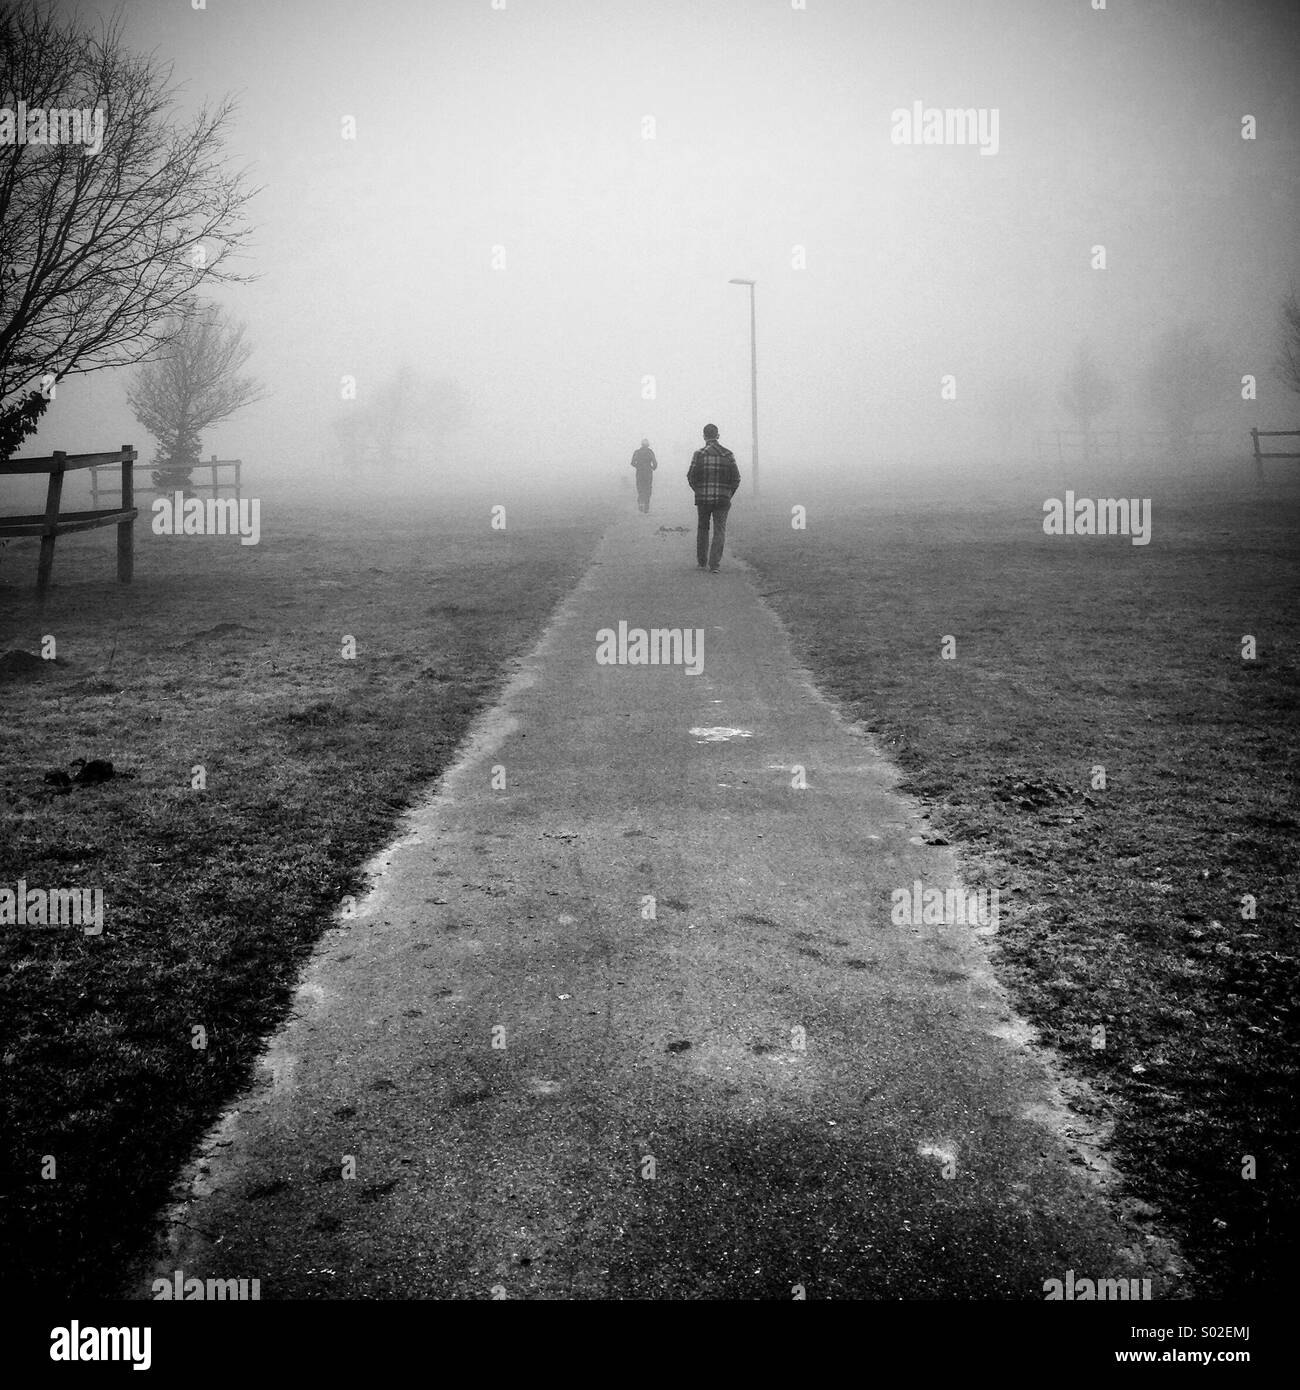 Zwei Figuren Fuß entfernt von der Kamera eine vor dem anderen auf einem isolierten Weg durch den Nebel Stockfoto